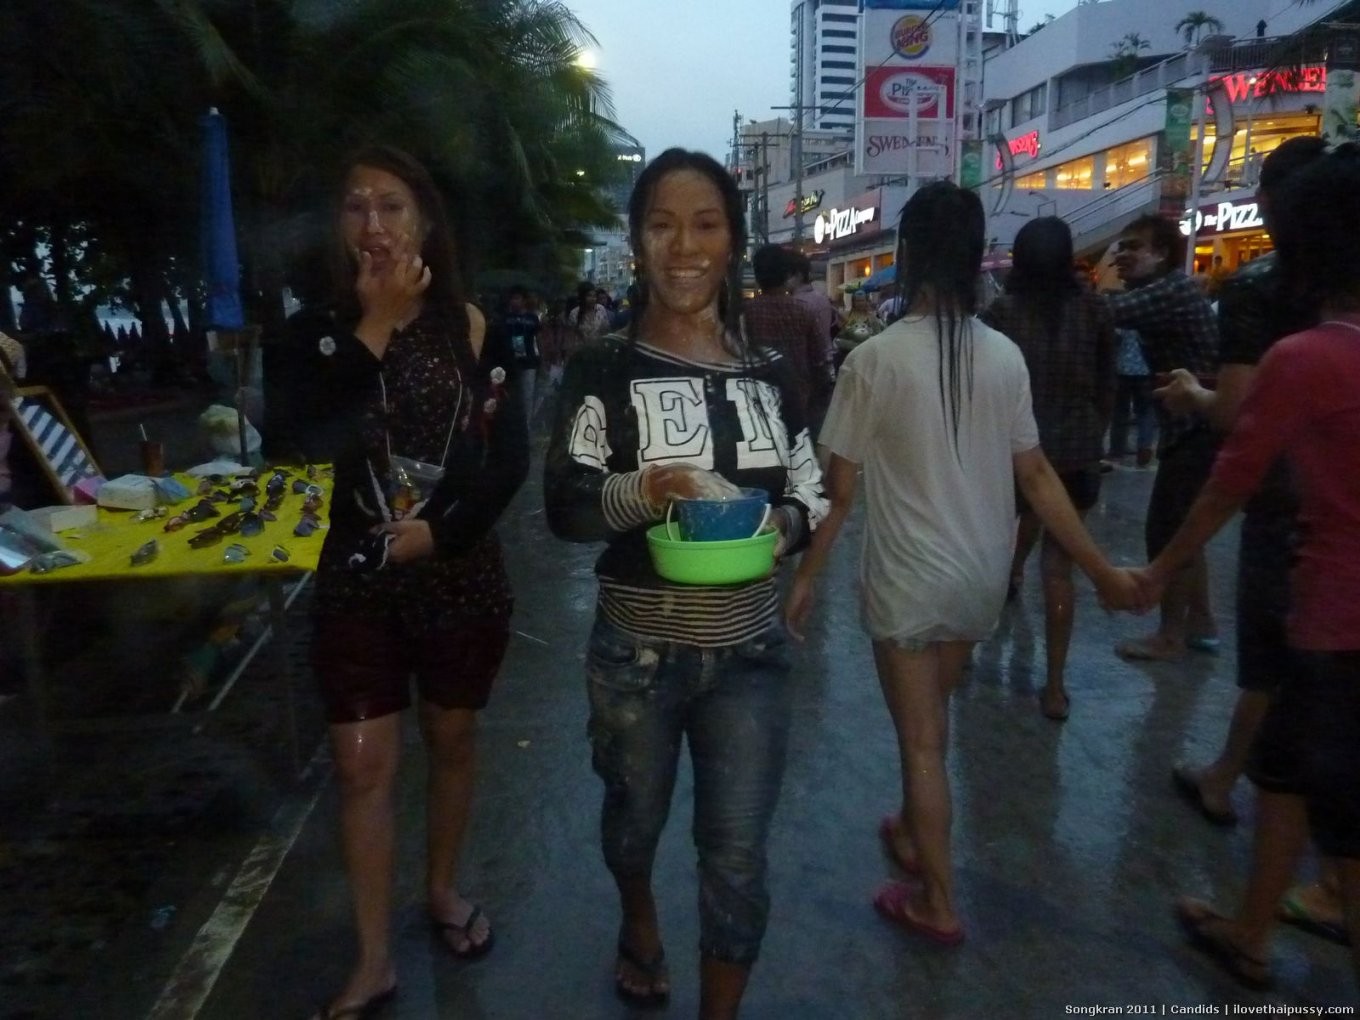 Vere prostitute di strada dalle strade di bangkok thailandia troie asiatiche calde
 #68166447